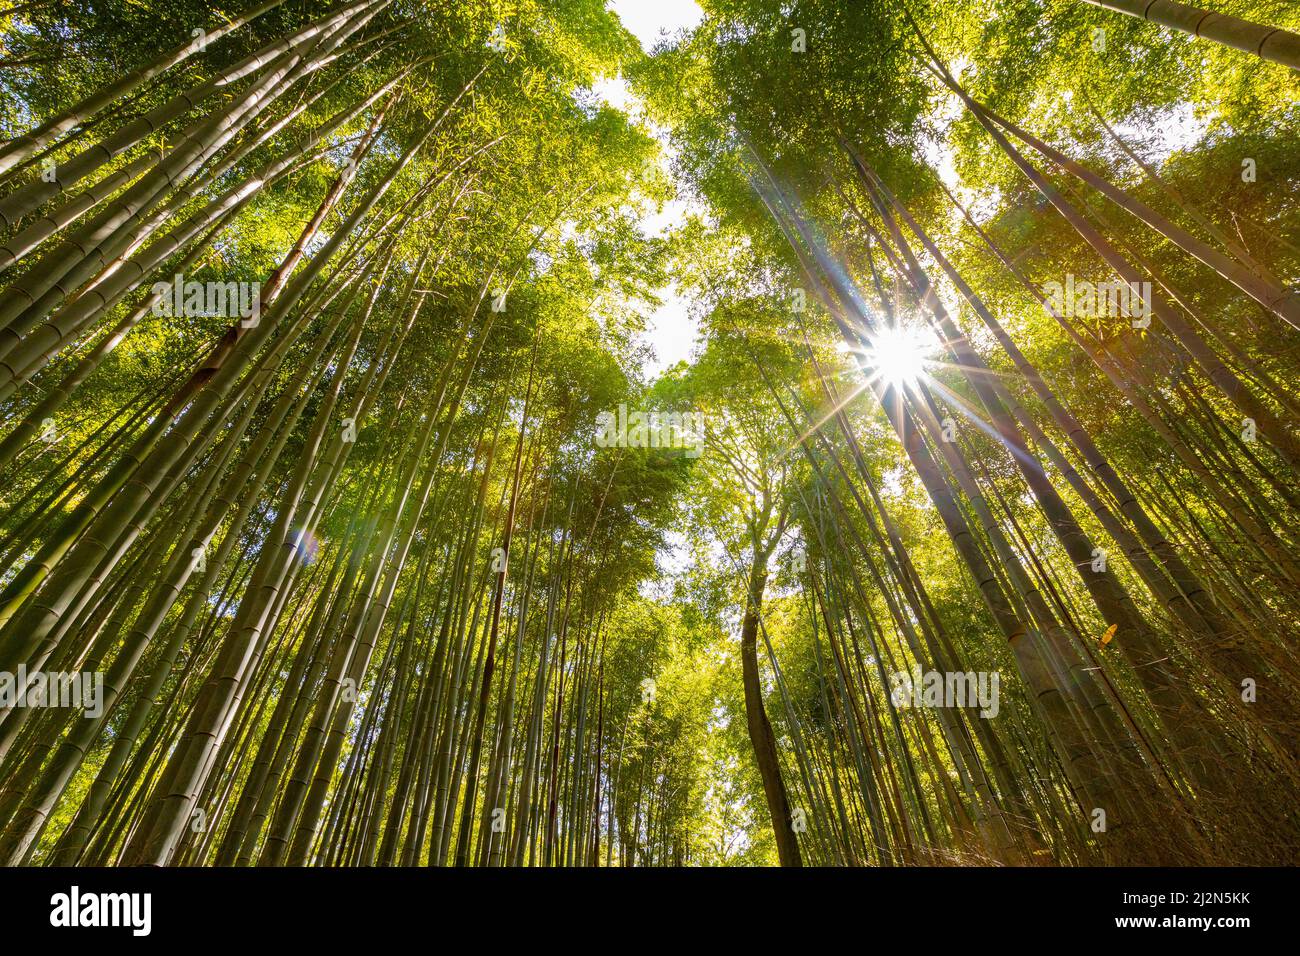 Vista en ángulo bajo del bosque de bambú contra el sol Foto de stock